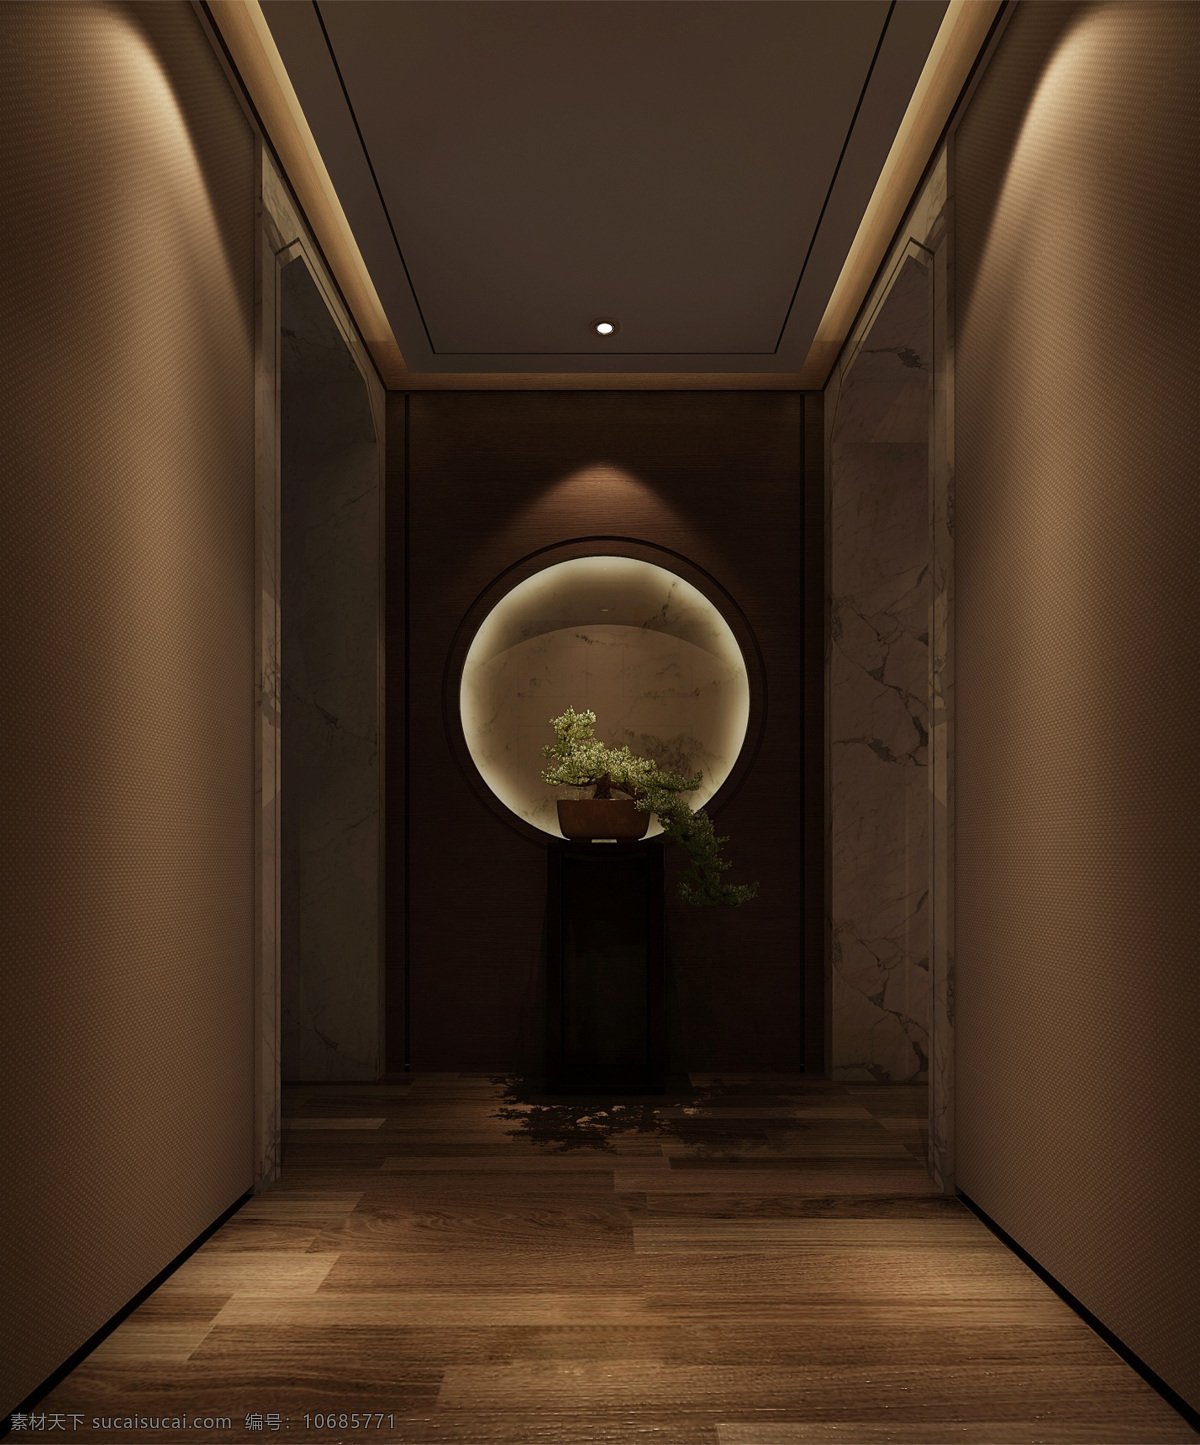 现代 客厅 走廊 装修 深 褐 背景 墙 室内装修 效果图 客厅装修 木地板 深色背景墙 盆栽装饰